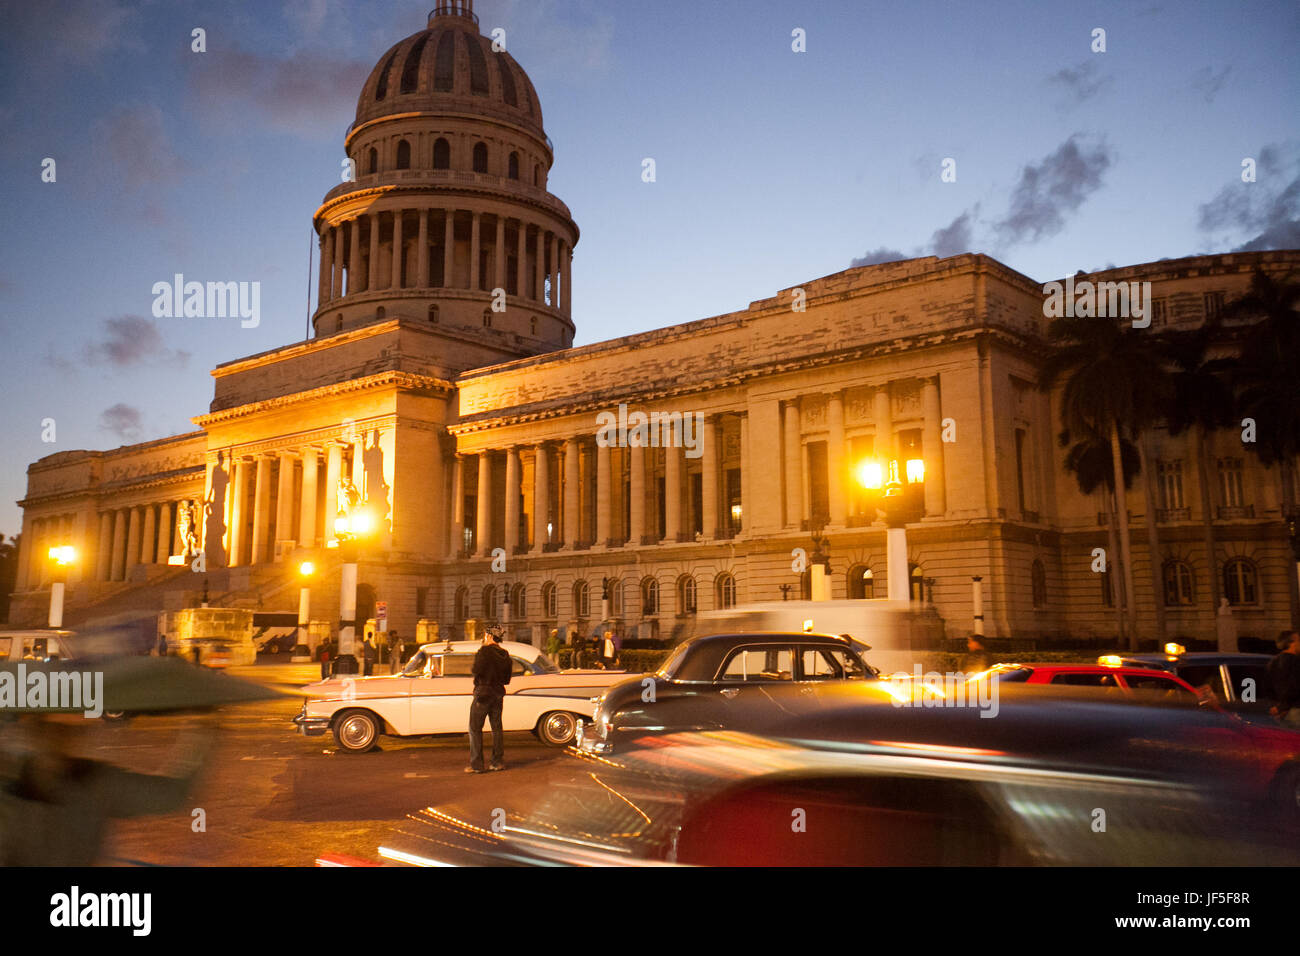 In der Abenddämmerung, außerhalb des Gebäudes El Capitolio beleuchten Lichter eine Straße, die mit klassischen amerikanischen Autos gefüllt ist. Stockfoto